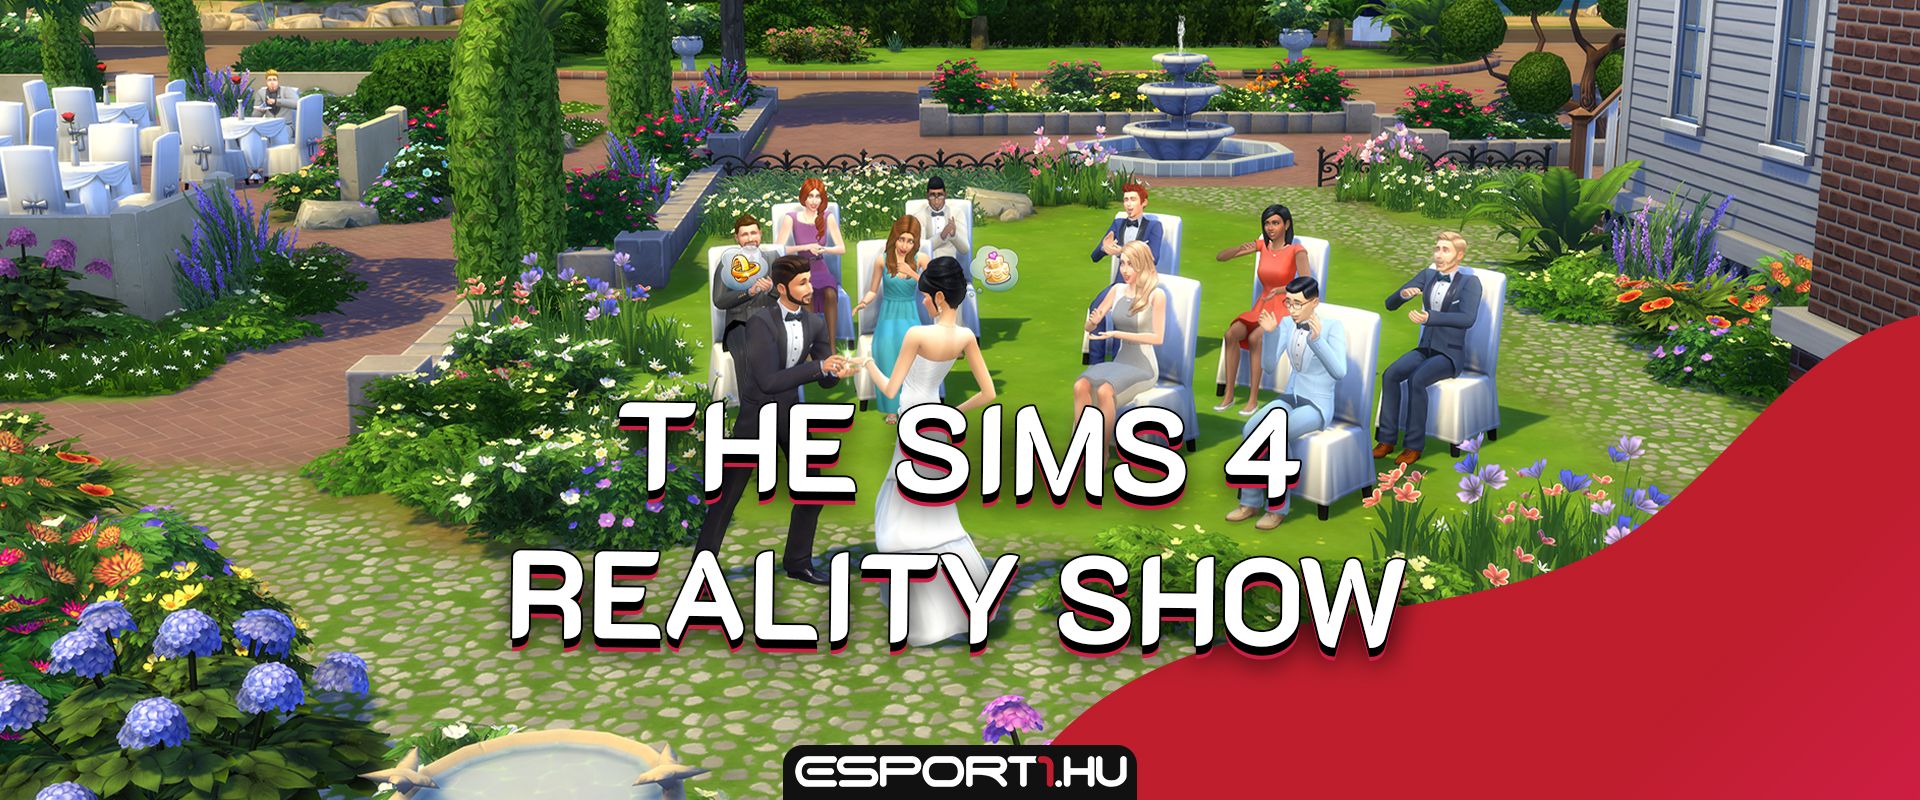 Reality show készül a The Sims 4 játék főszereplésével